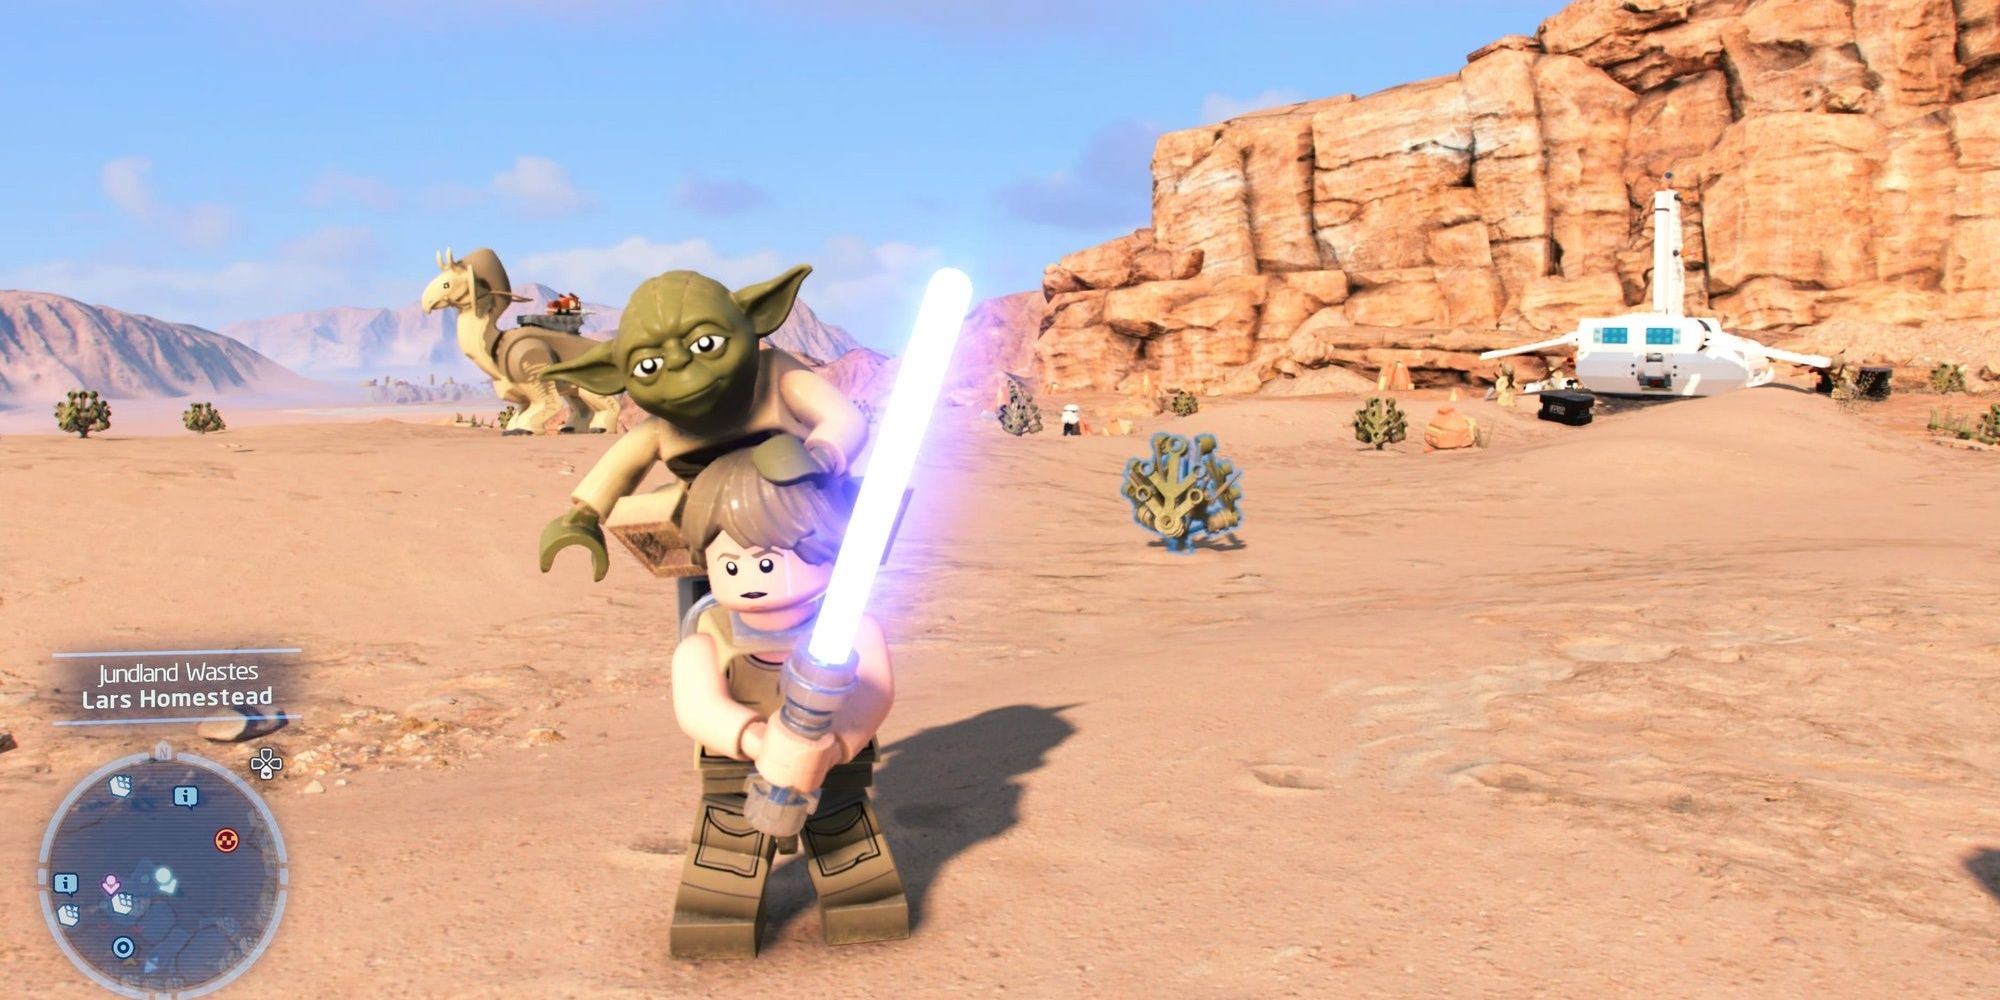 Luke Carrying Yoda On His Back On Desert Planet With Lightsaber Extended